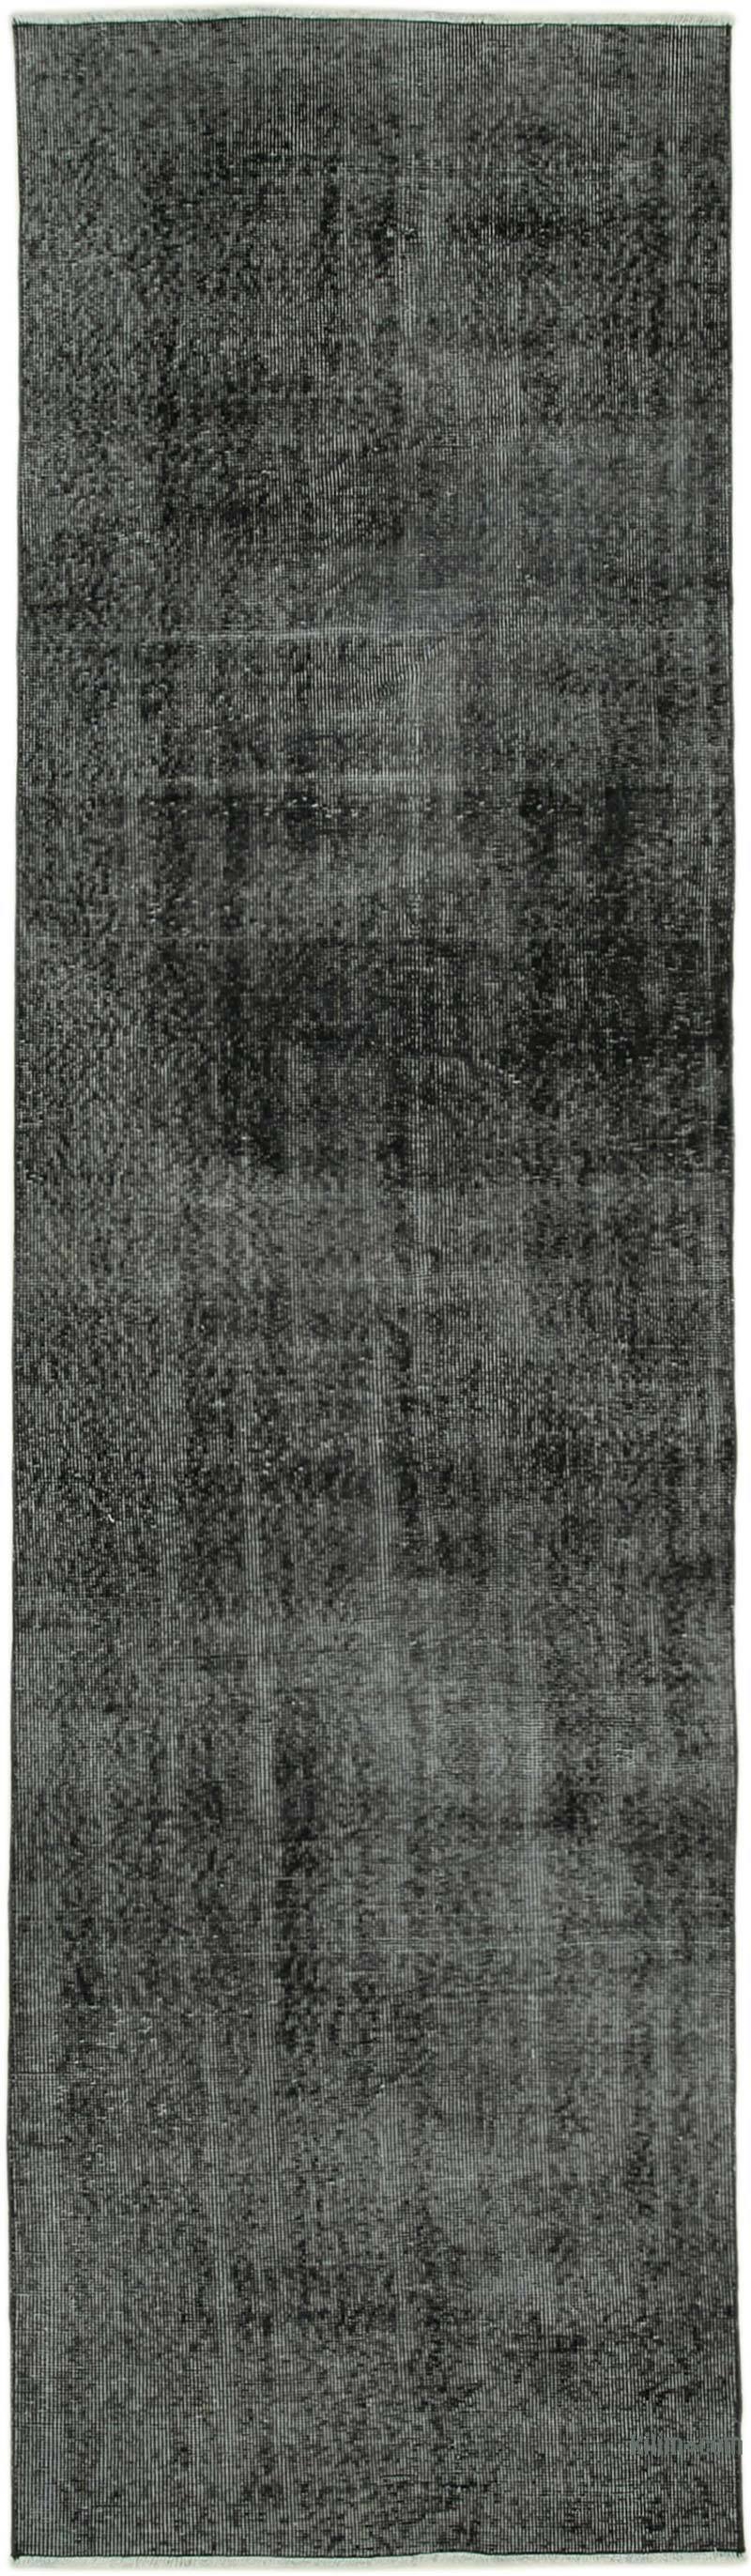 Siyah Boyalı El Dokuma Vintage Halı Yolluk - 89 cm x 314 cm - K0052150